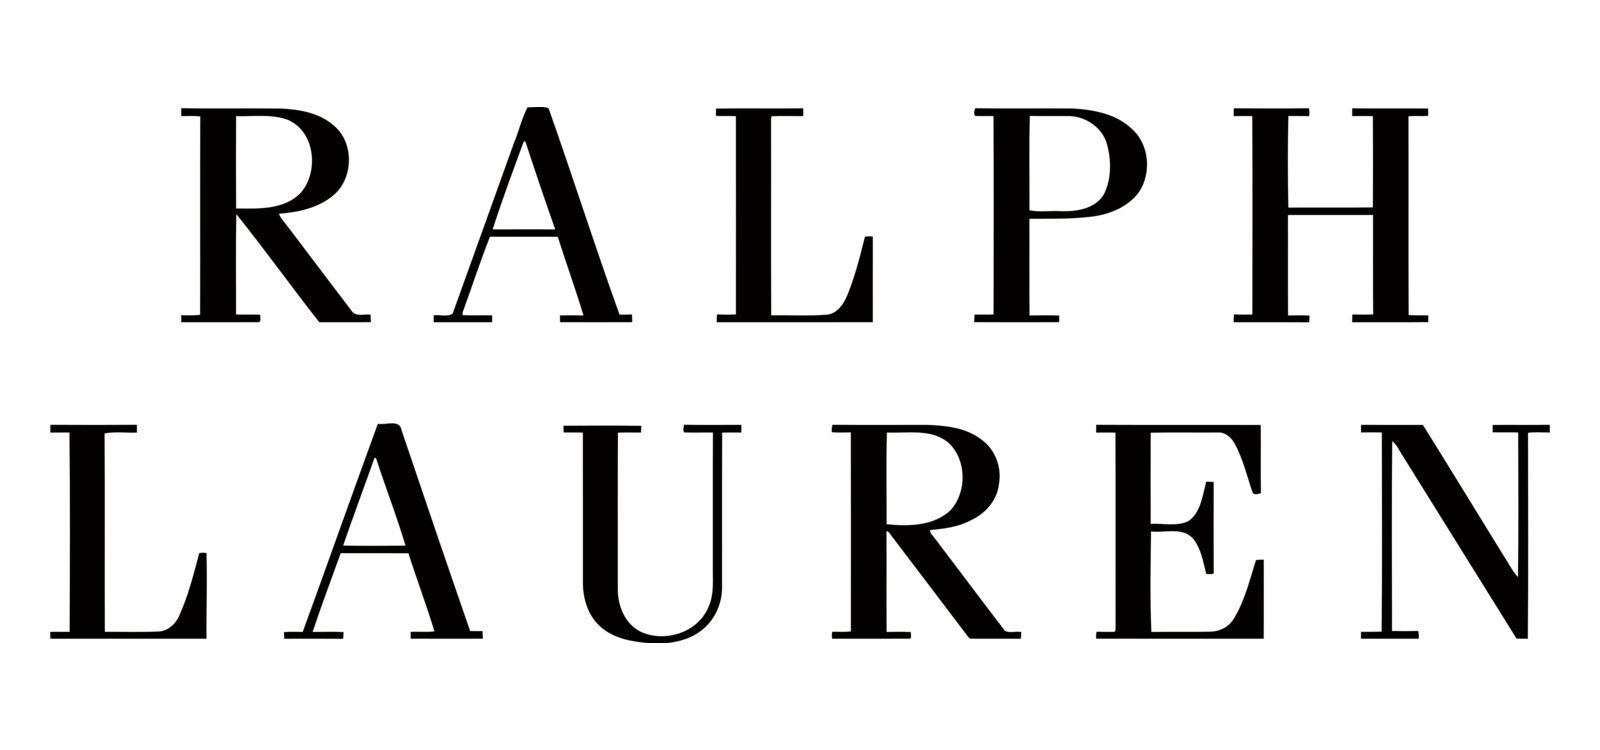 Font-Ralph-Lauren-Logo.jpeg